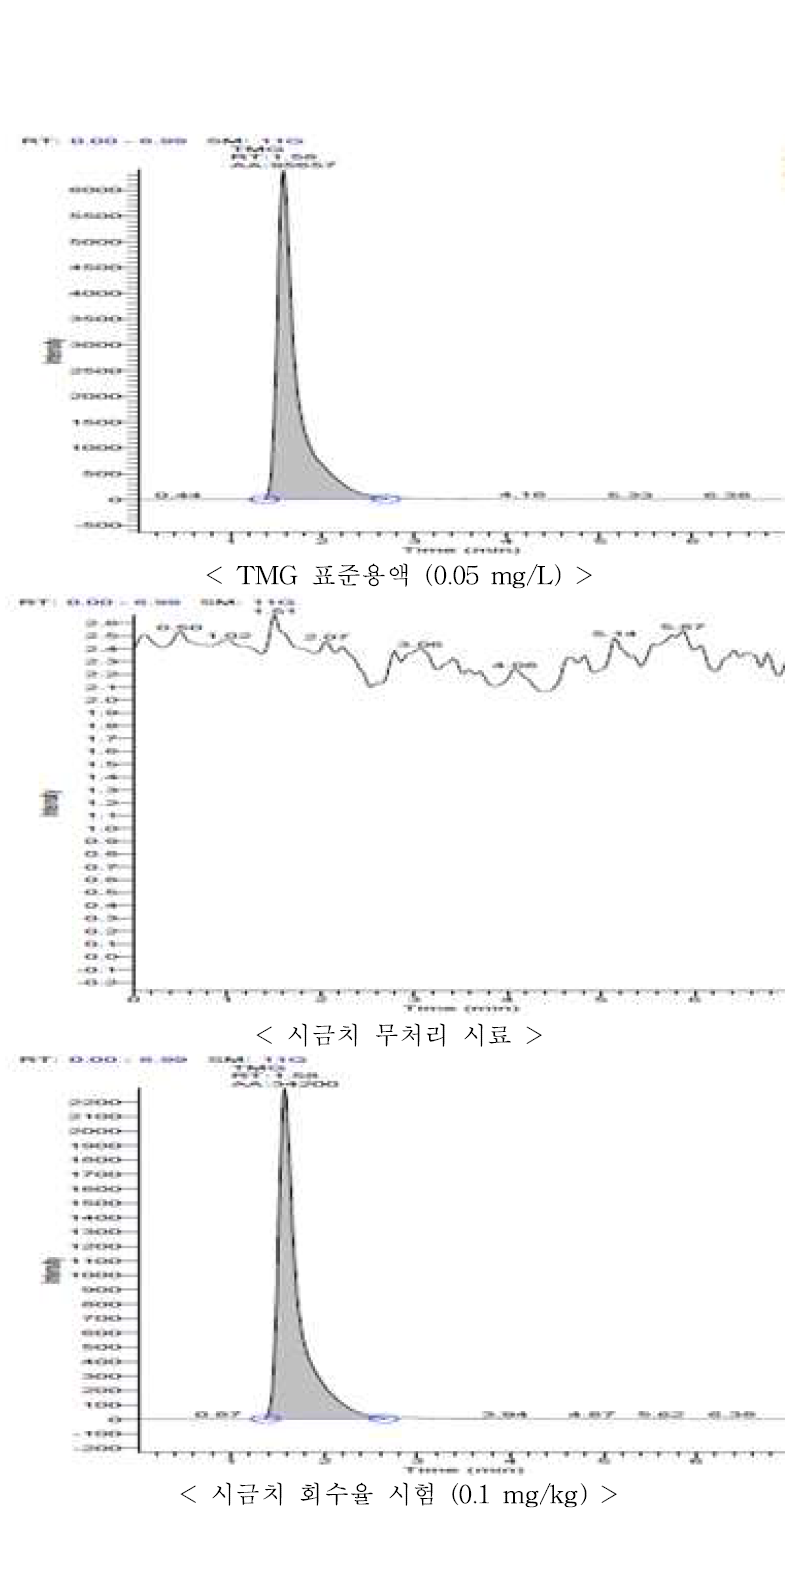 시금치 중 TMG의 회수율 크로마토그램